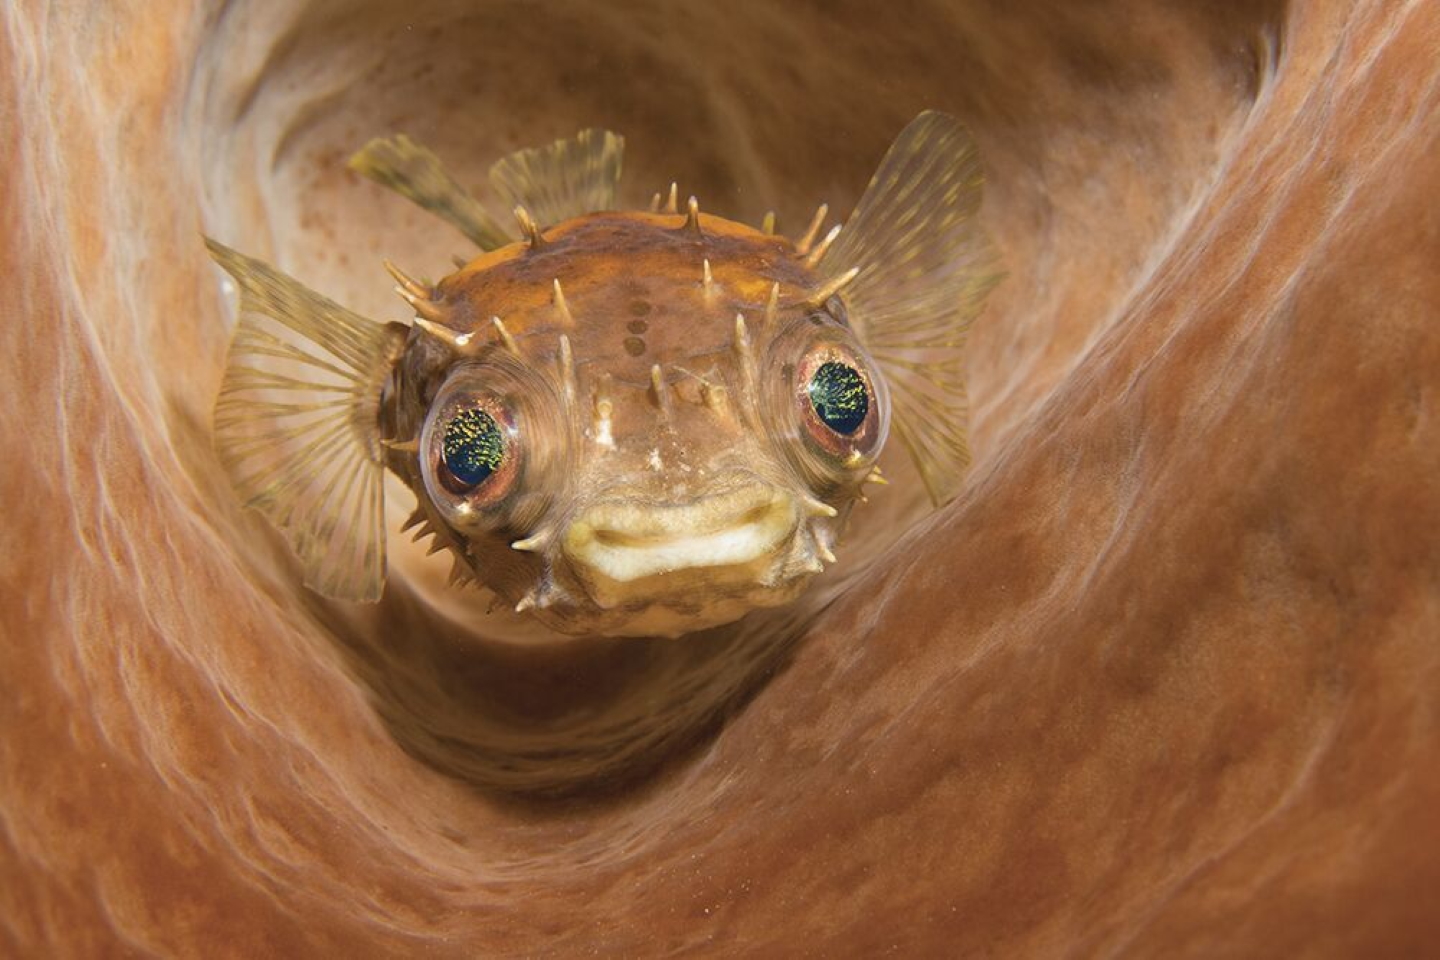 2 место - Компакт. Пролив Лембех, Индонезия. "Рыба-еж прячется в бочкообразной губке". Фото: Marcelo Johan Ogata / Scuba Diving Magazine